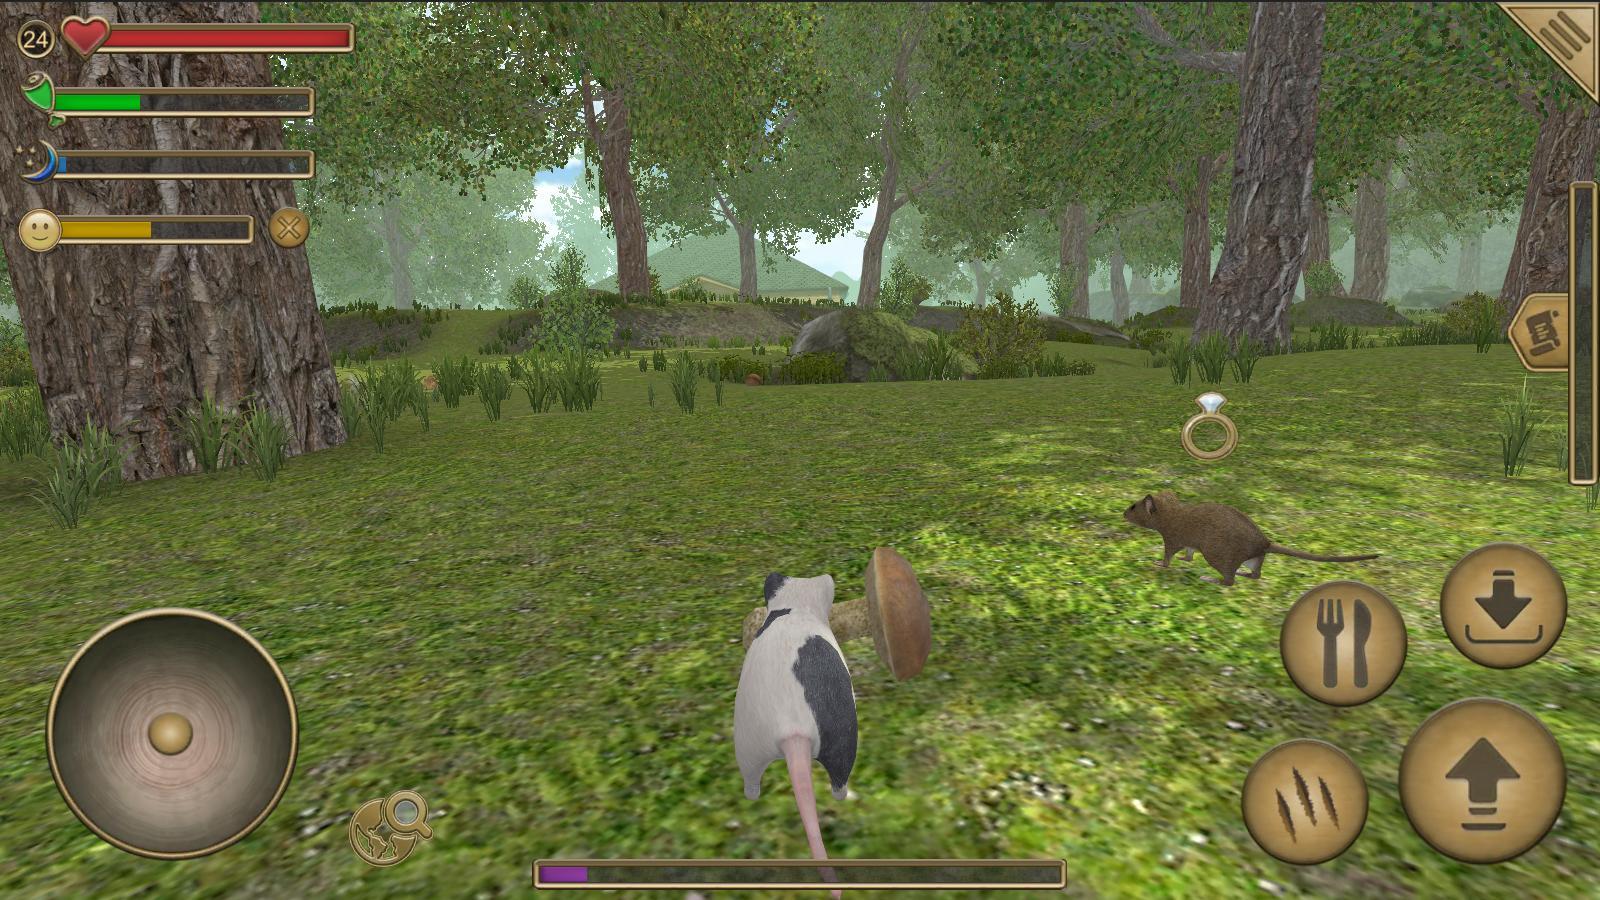 Screenshot 1 of Симулятор мыши: Лесной дом 1.38